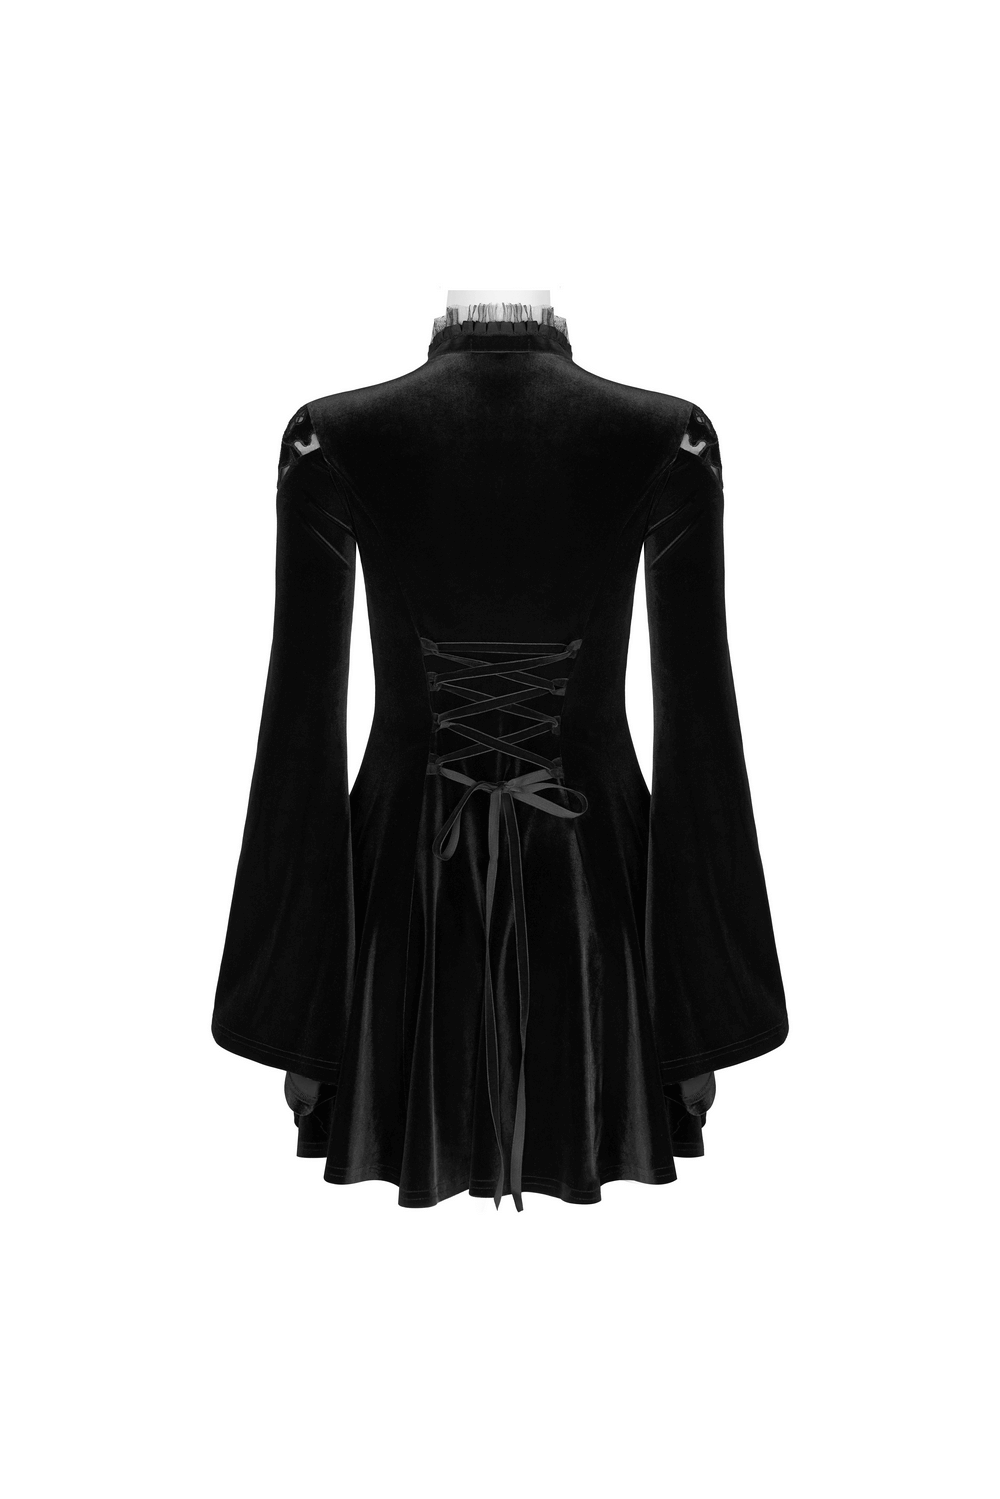 Lace Collar Velvet Gothic Women's Flare Dress - HARD'N'HEAVY